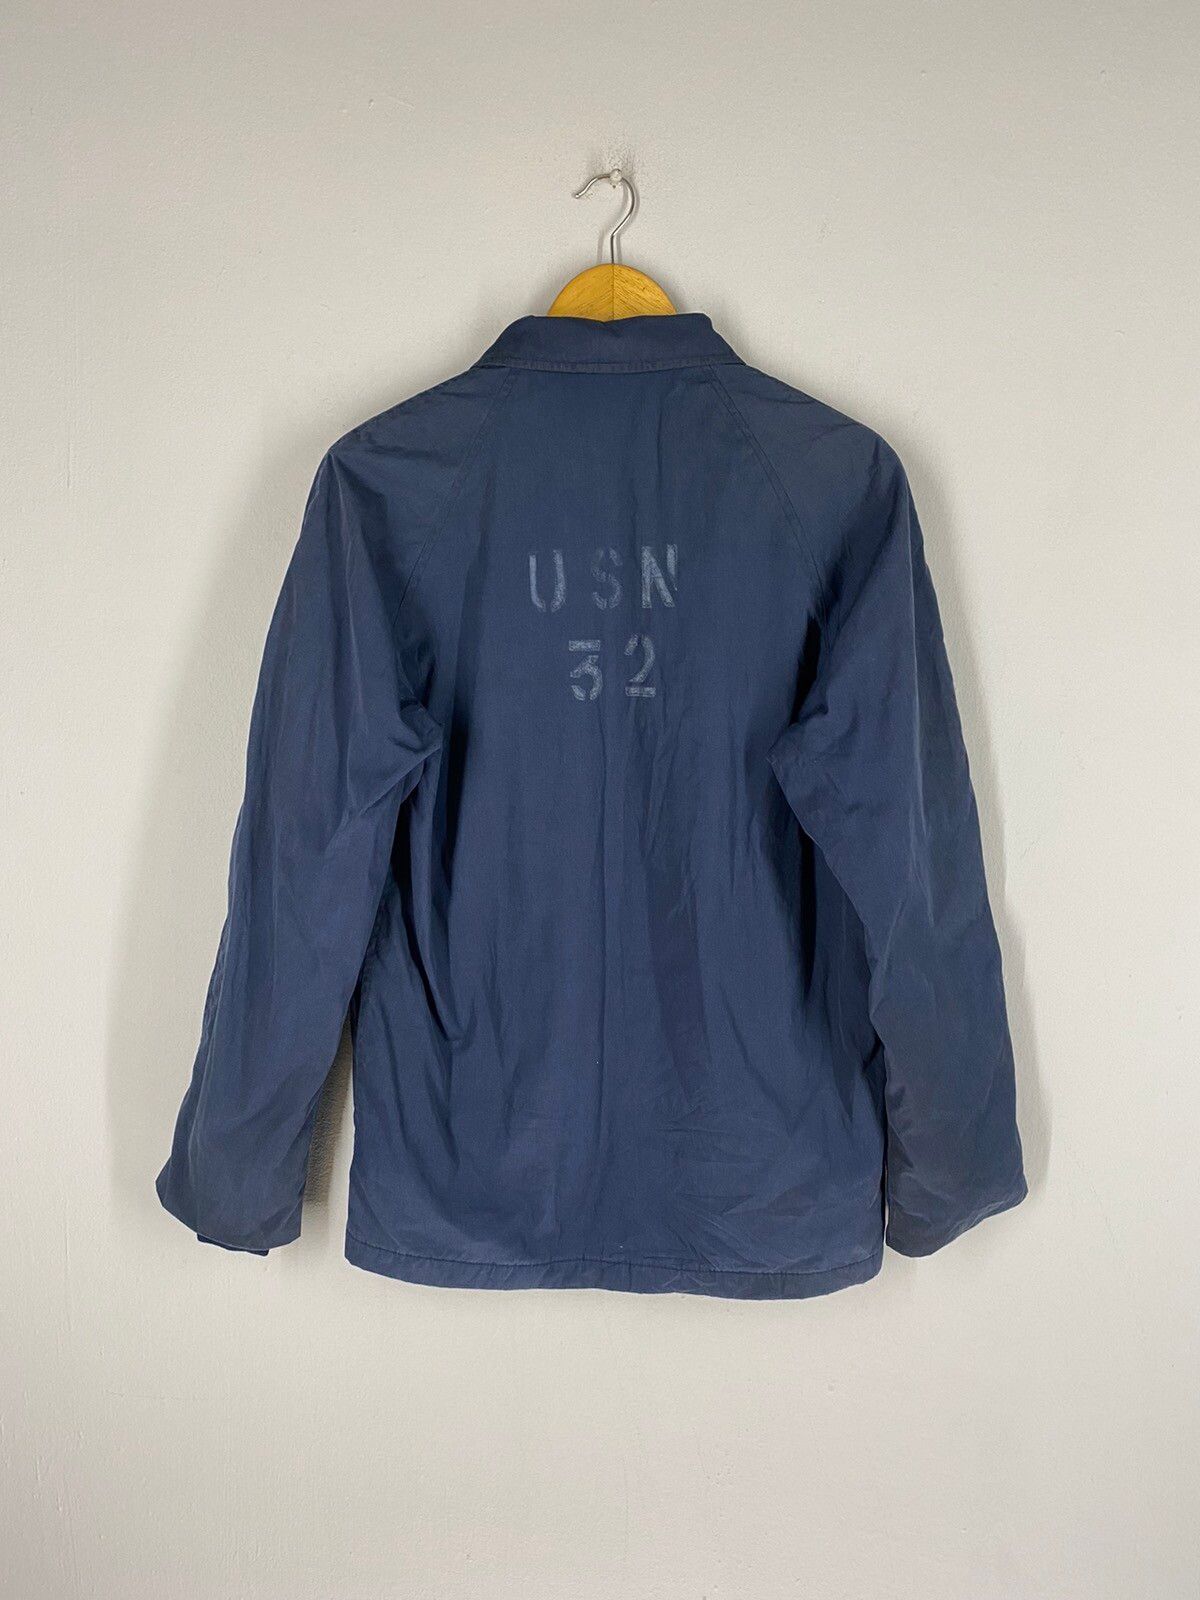 Usn Vintage 80s USN 32 Top Zipper Jacket Size US S / EU 44-46 / 1 - 1 Preview